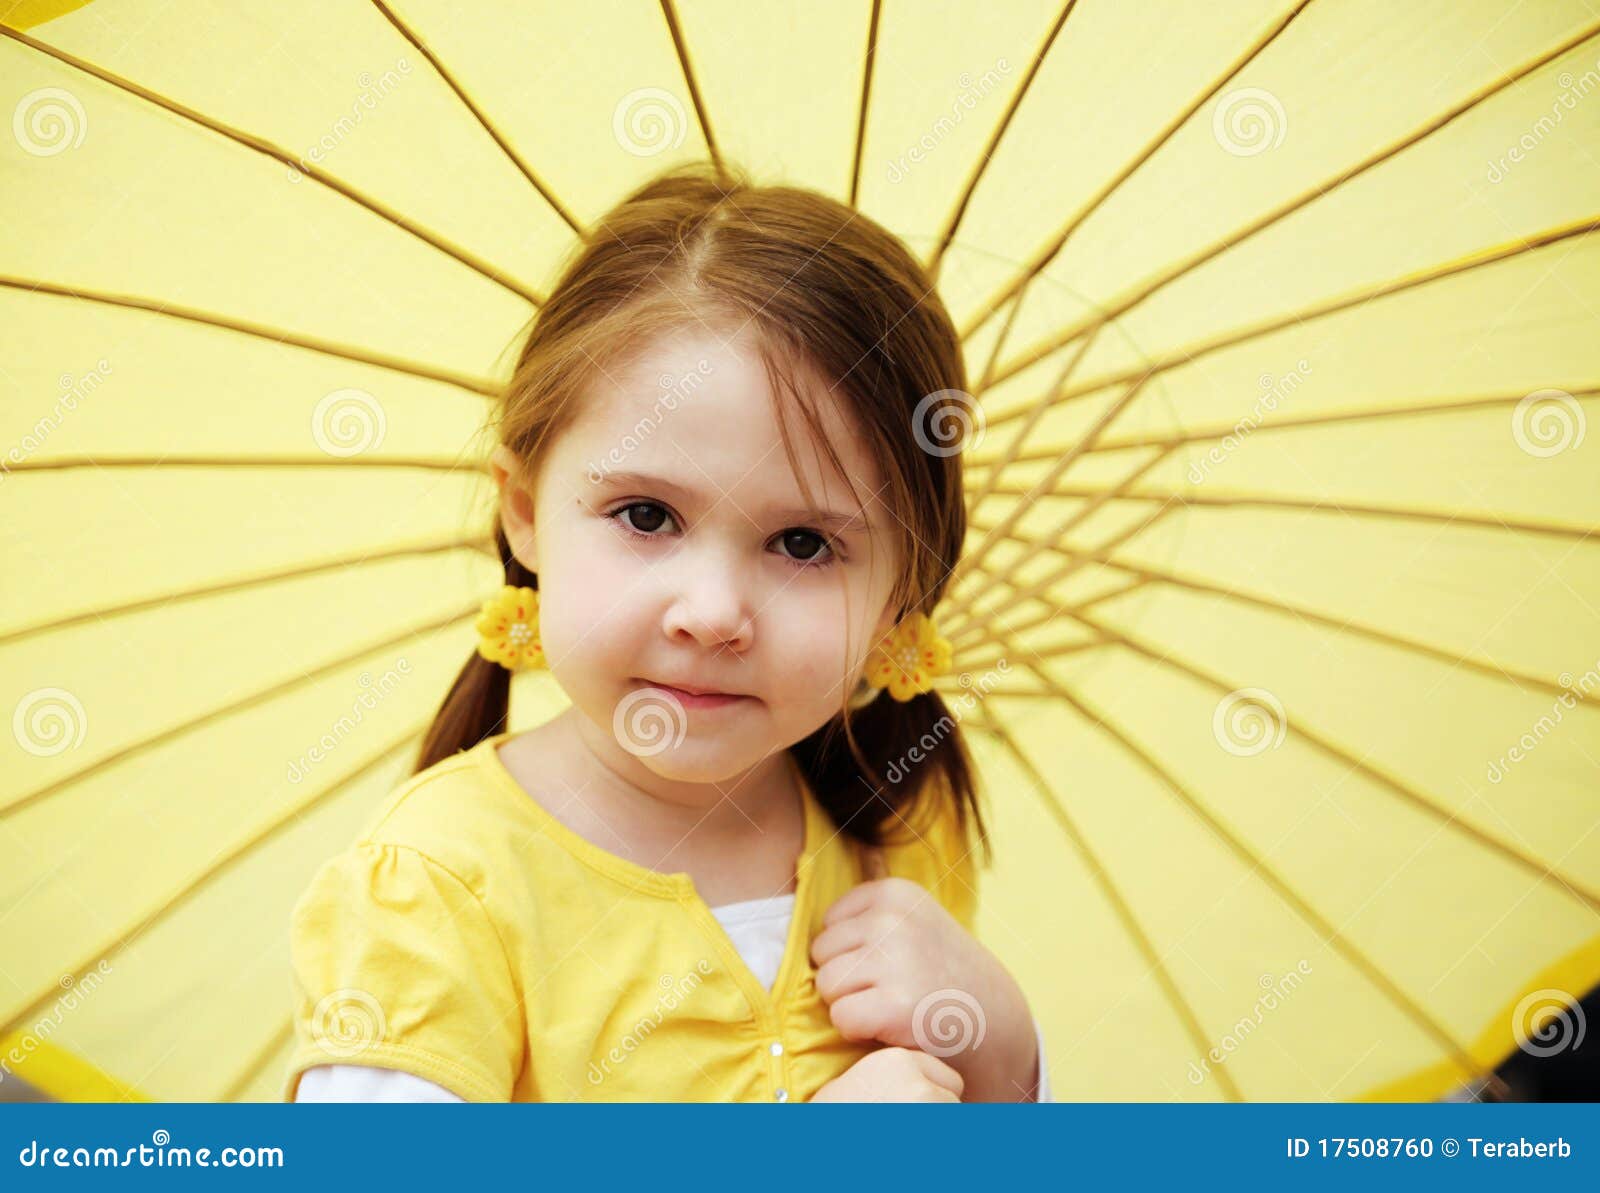 Включи желтая девочка. Ребёнок в жёлтом девка. Детская фотосессии в желтом цвете. Маленькая девочка в желтом фото на белом фоне. Девочка в желтом капюшоне.